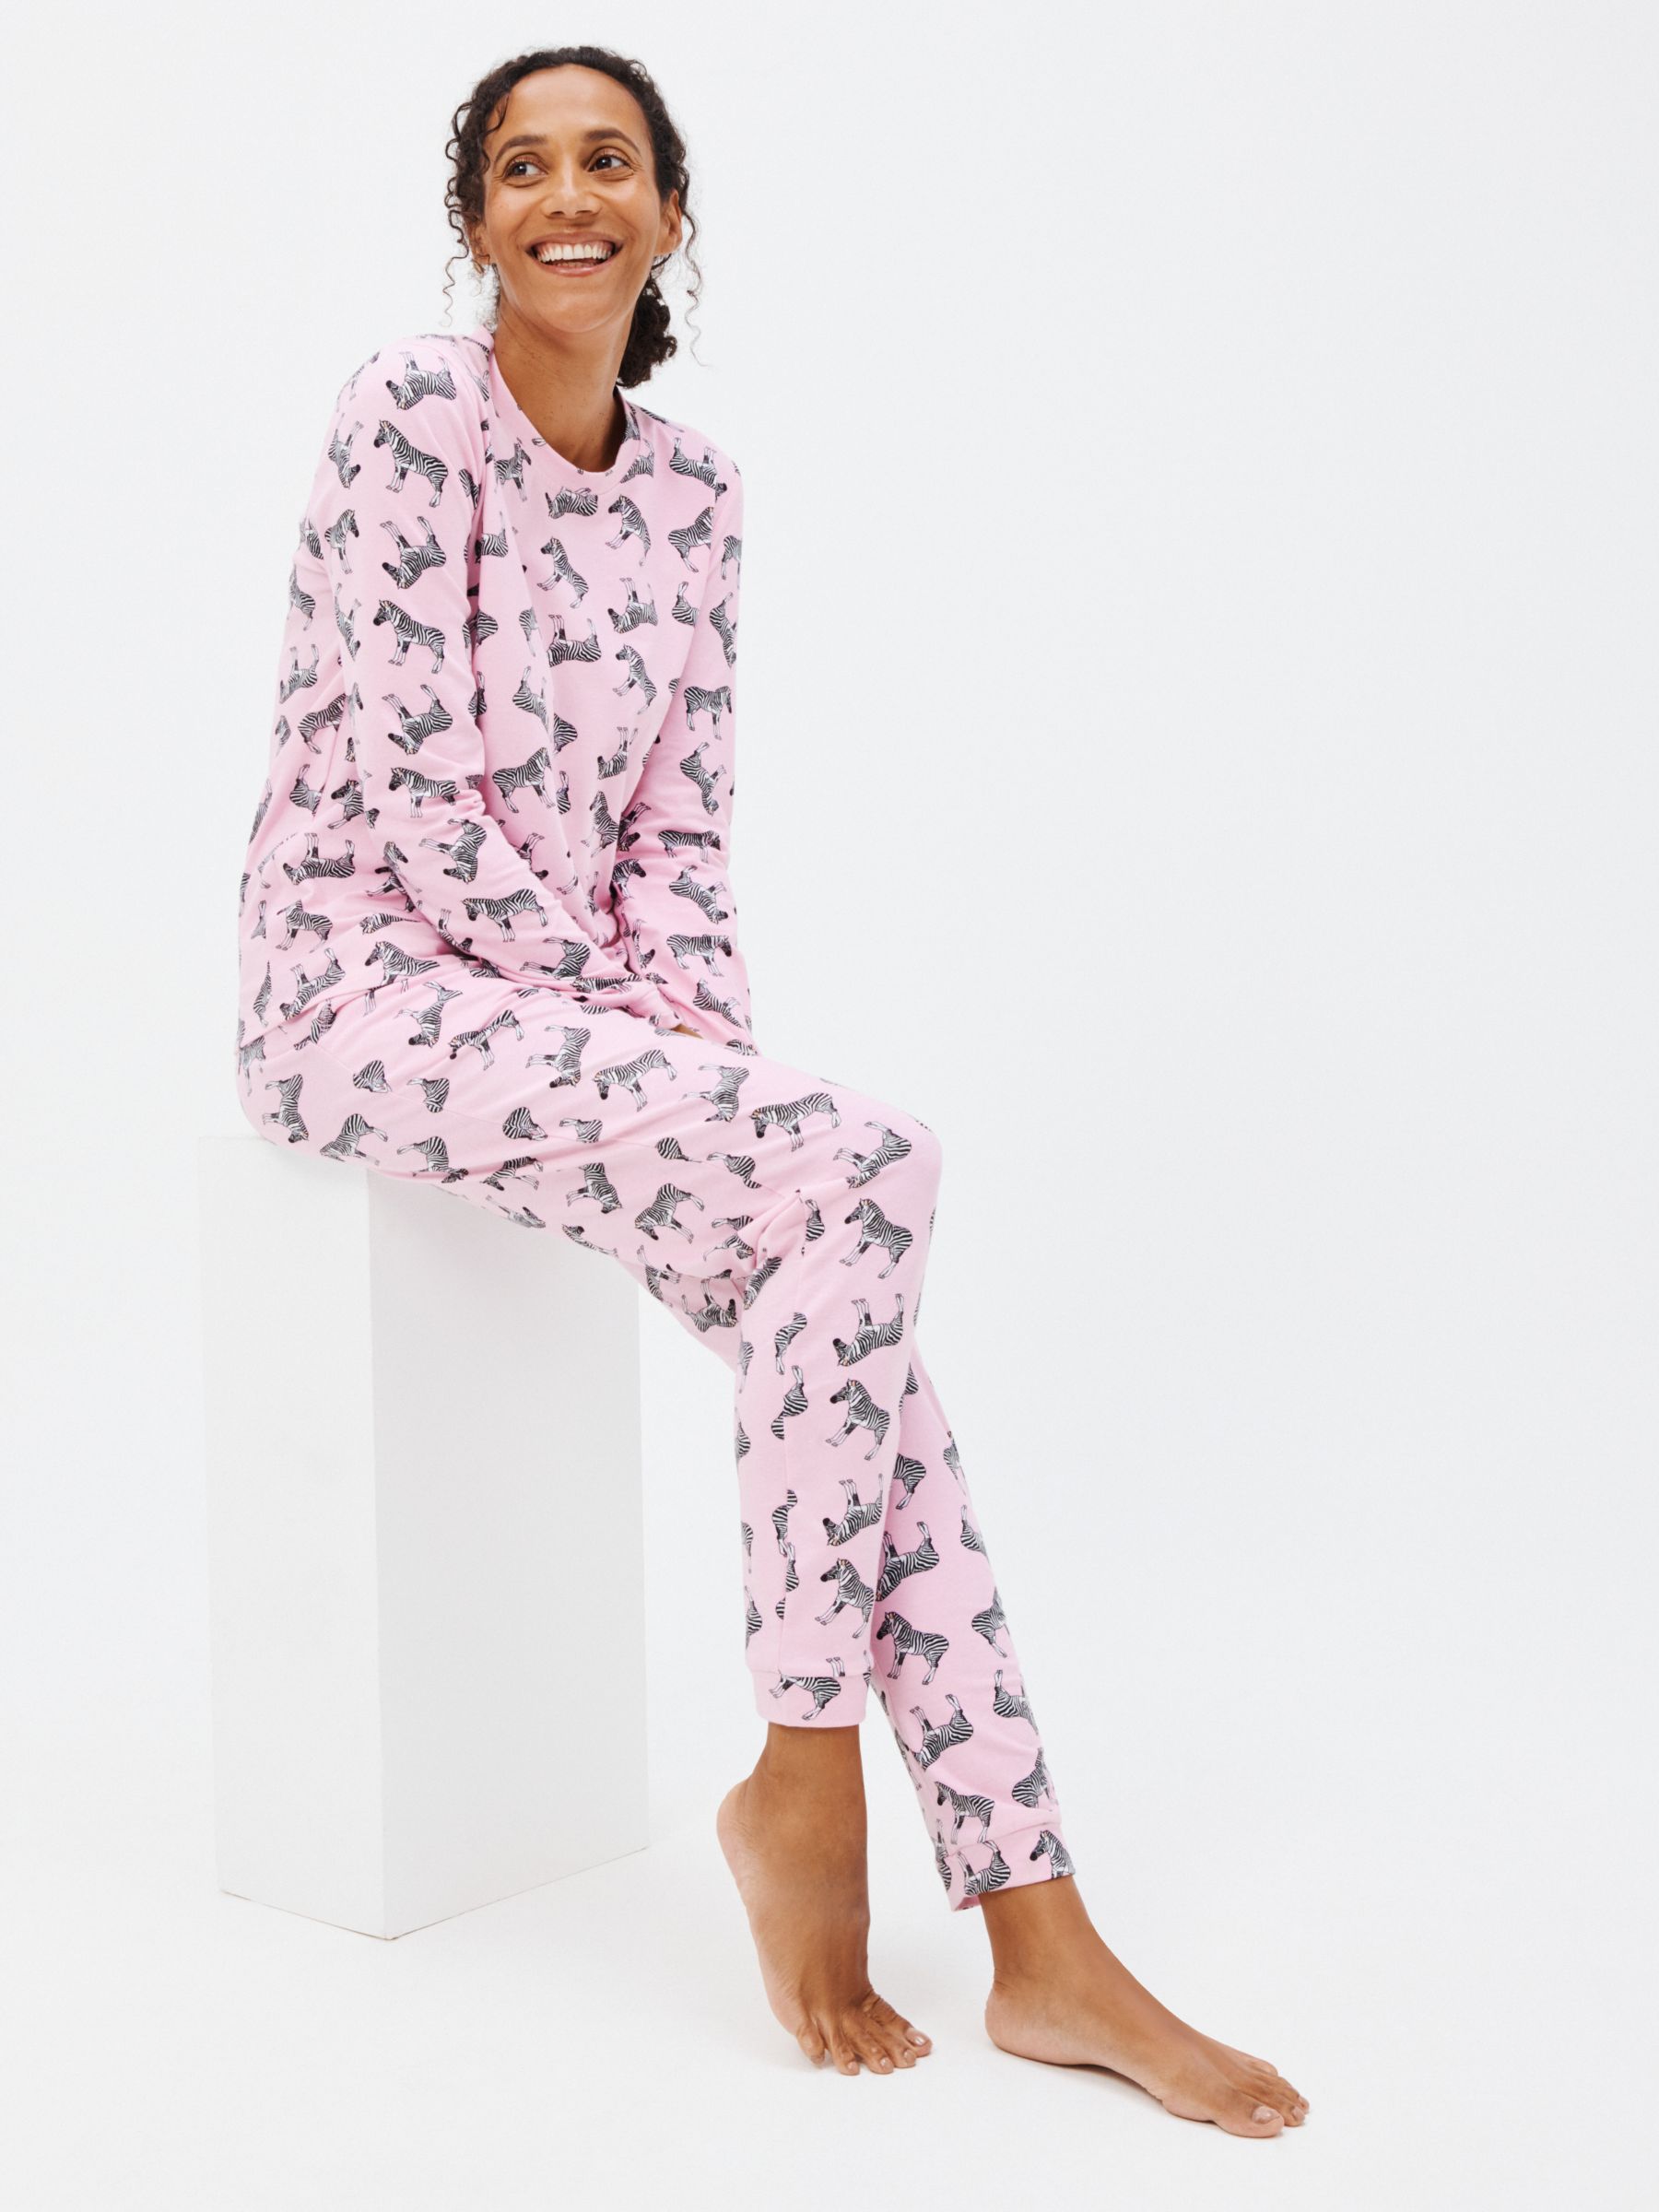 Their Nibs Zebras Jersey Pyjamas, Pink At John Lewis Partners